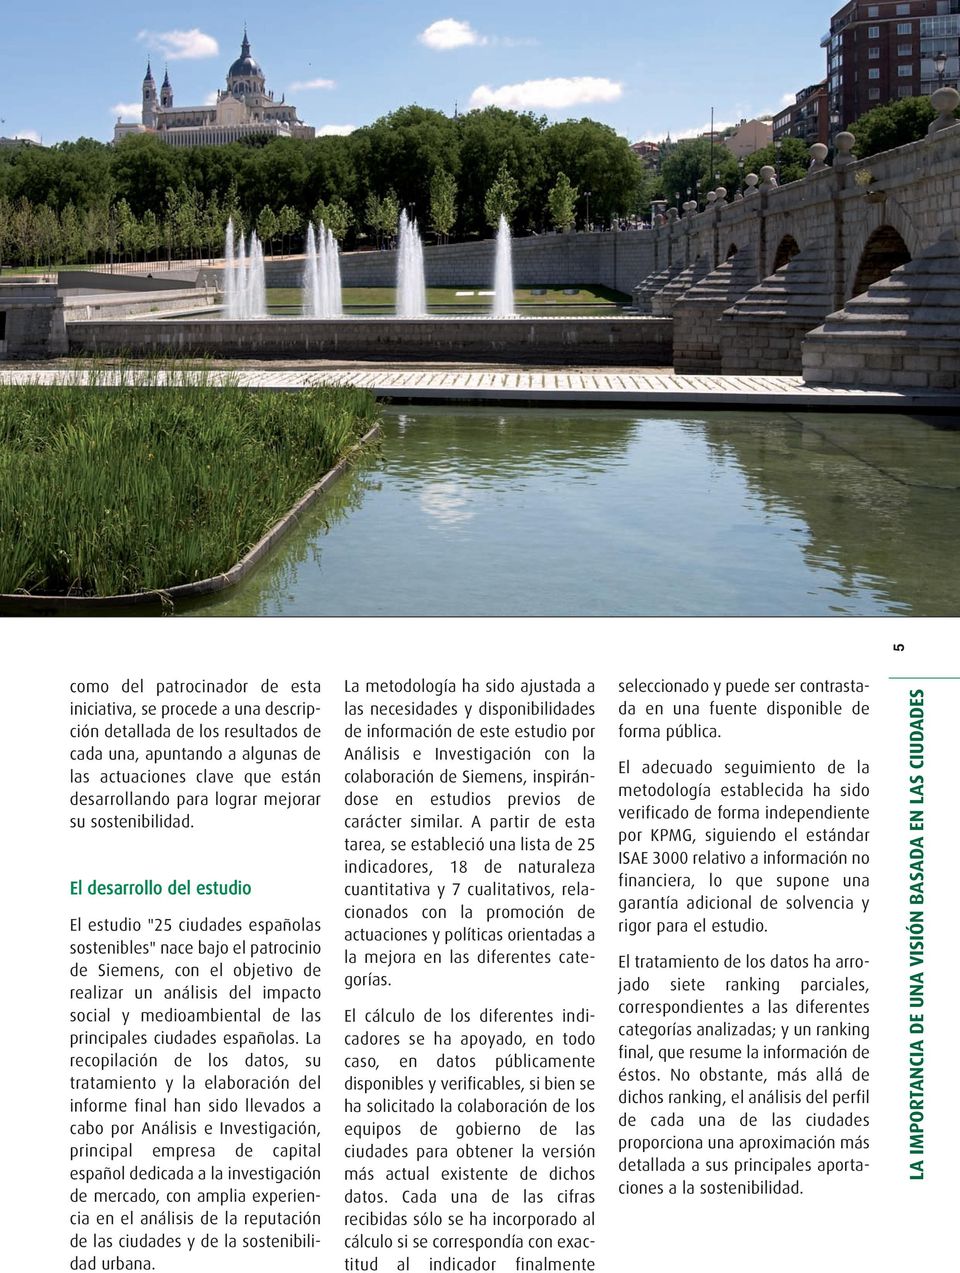 El desarrollo del estudio El estudio "25 ciudades españolas sostenibles" nace bajo el patrocinio de Siemens, con el objetivo de realizar un análisis del impacto social y medioambiental de las